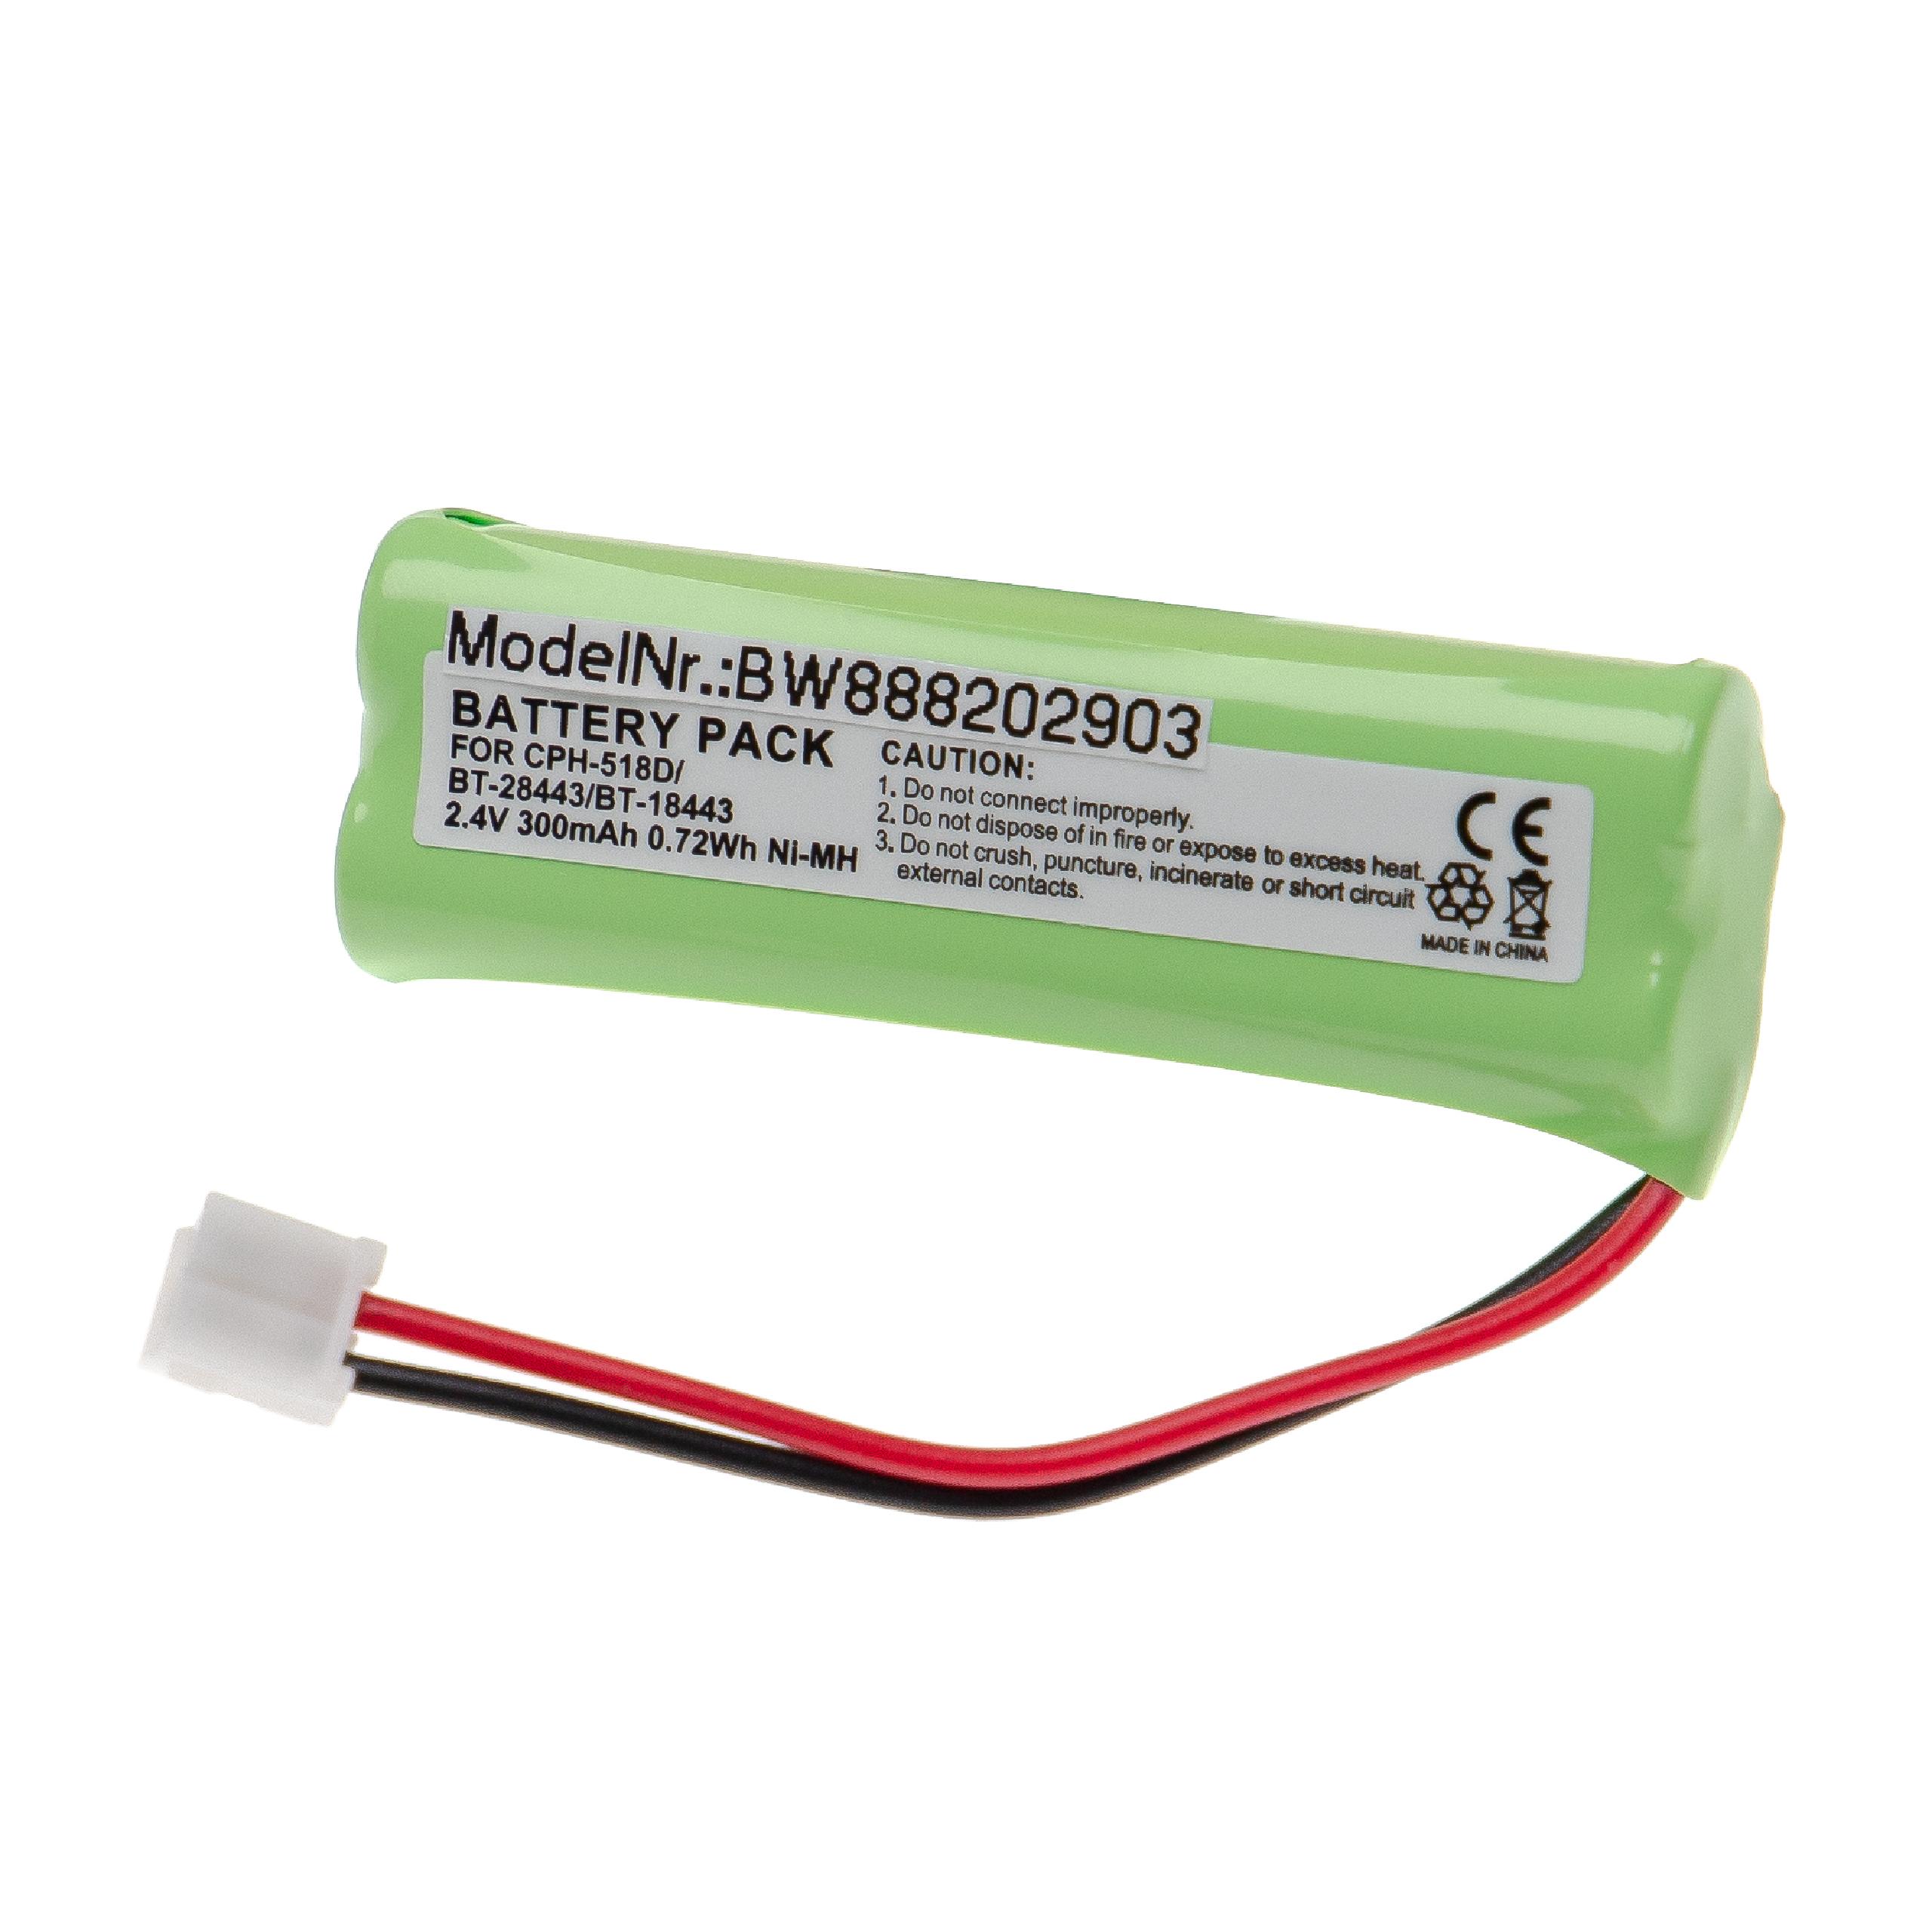 Batterie remplace Vtech BT-18443, 89-1337-00-00, BT-28443, CPH-518D pour téléphone - 300mAh 2,4V NiMH